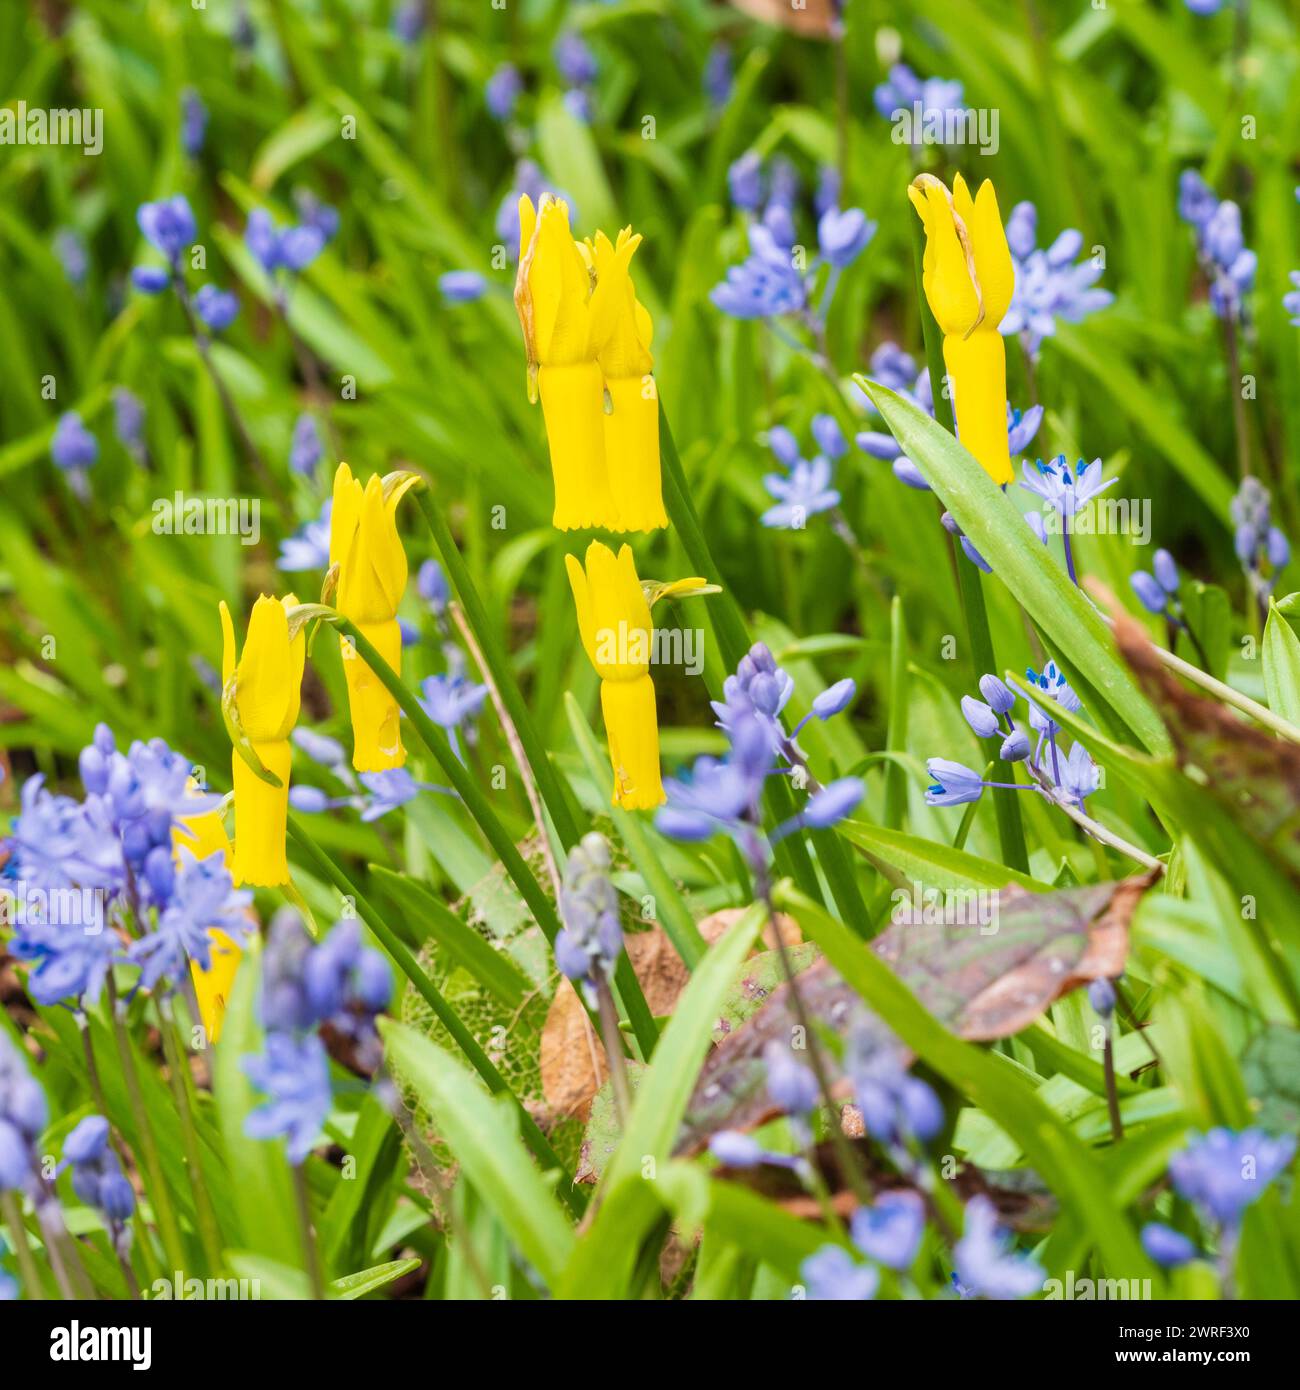 Fiori gialli fortemente riflessi del primo Narciso ciclamino, che si sta avvicinando, tra il blu della Scilla bithynica Foto Stock